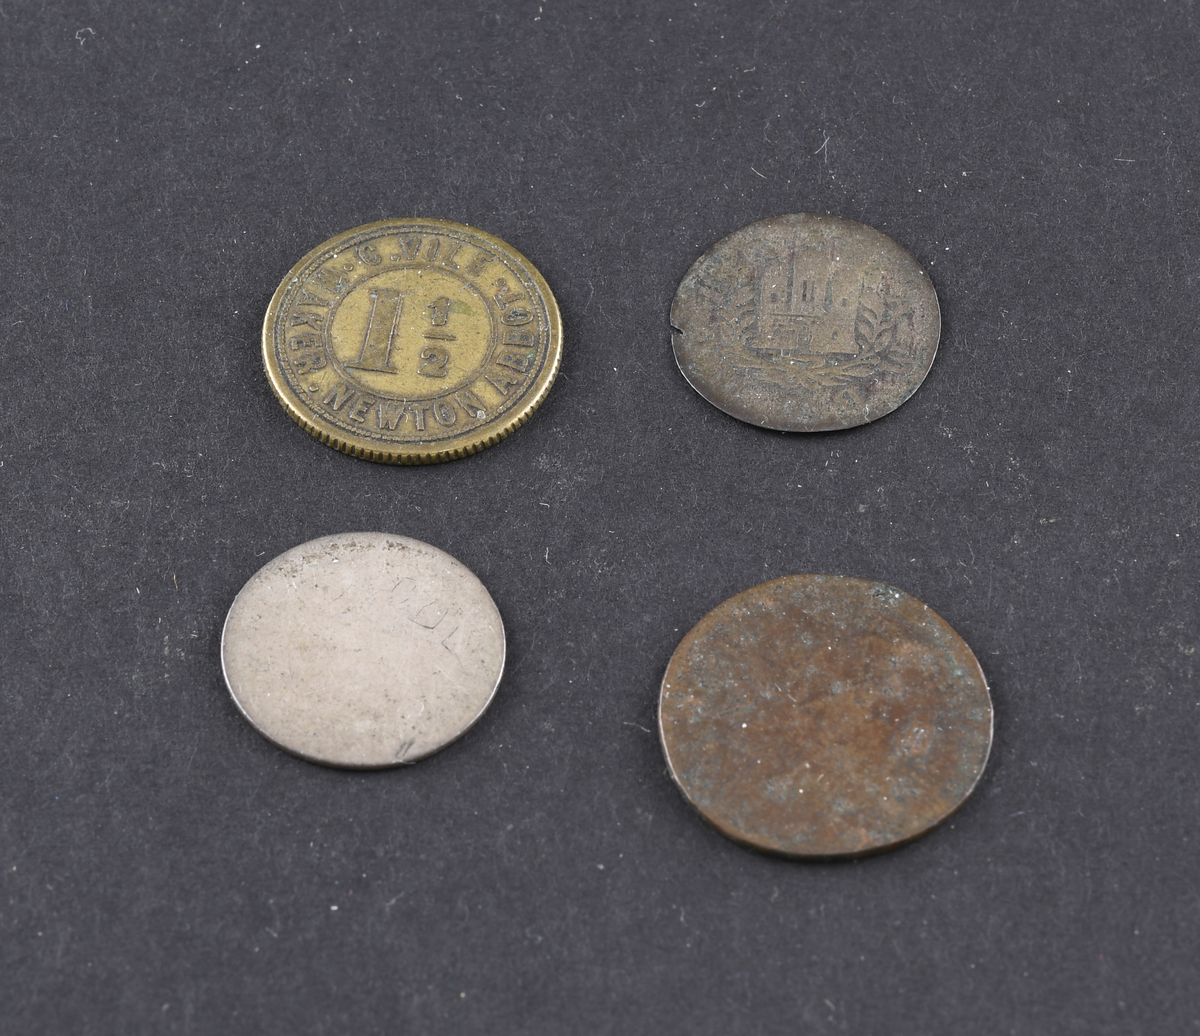 Fire mynter og polletter i varierende størrelse og tilstand. Myntene er fra USA, Tyskland og England. Myntene og polettene var oppbevart i en liten papirpose.